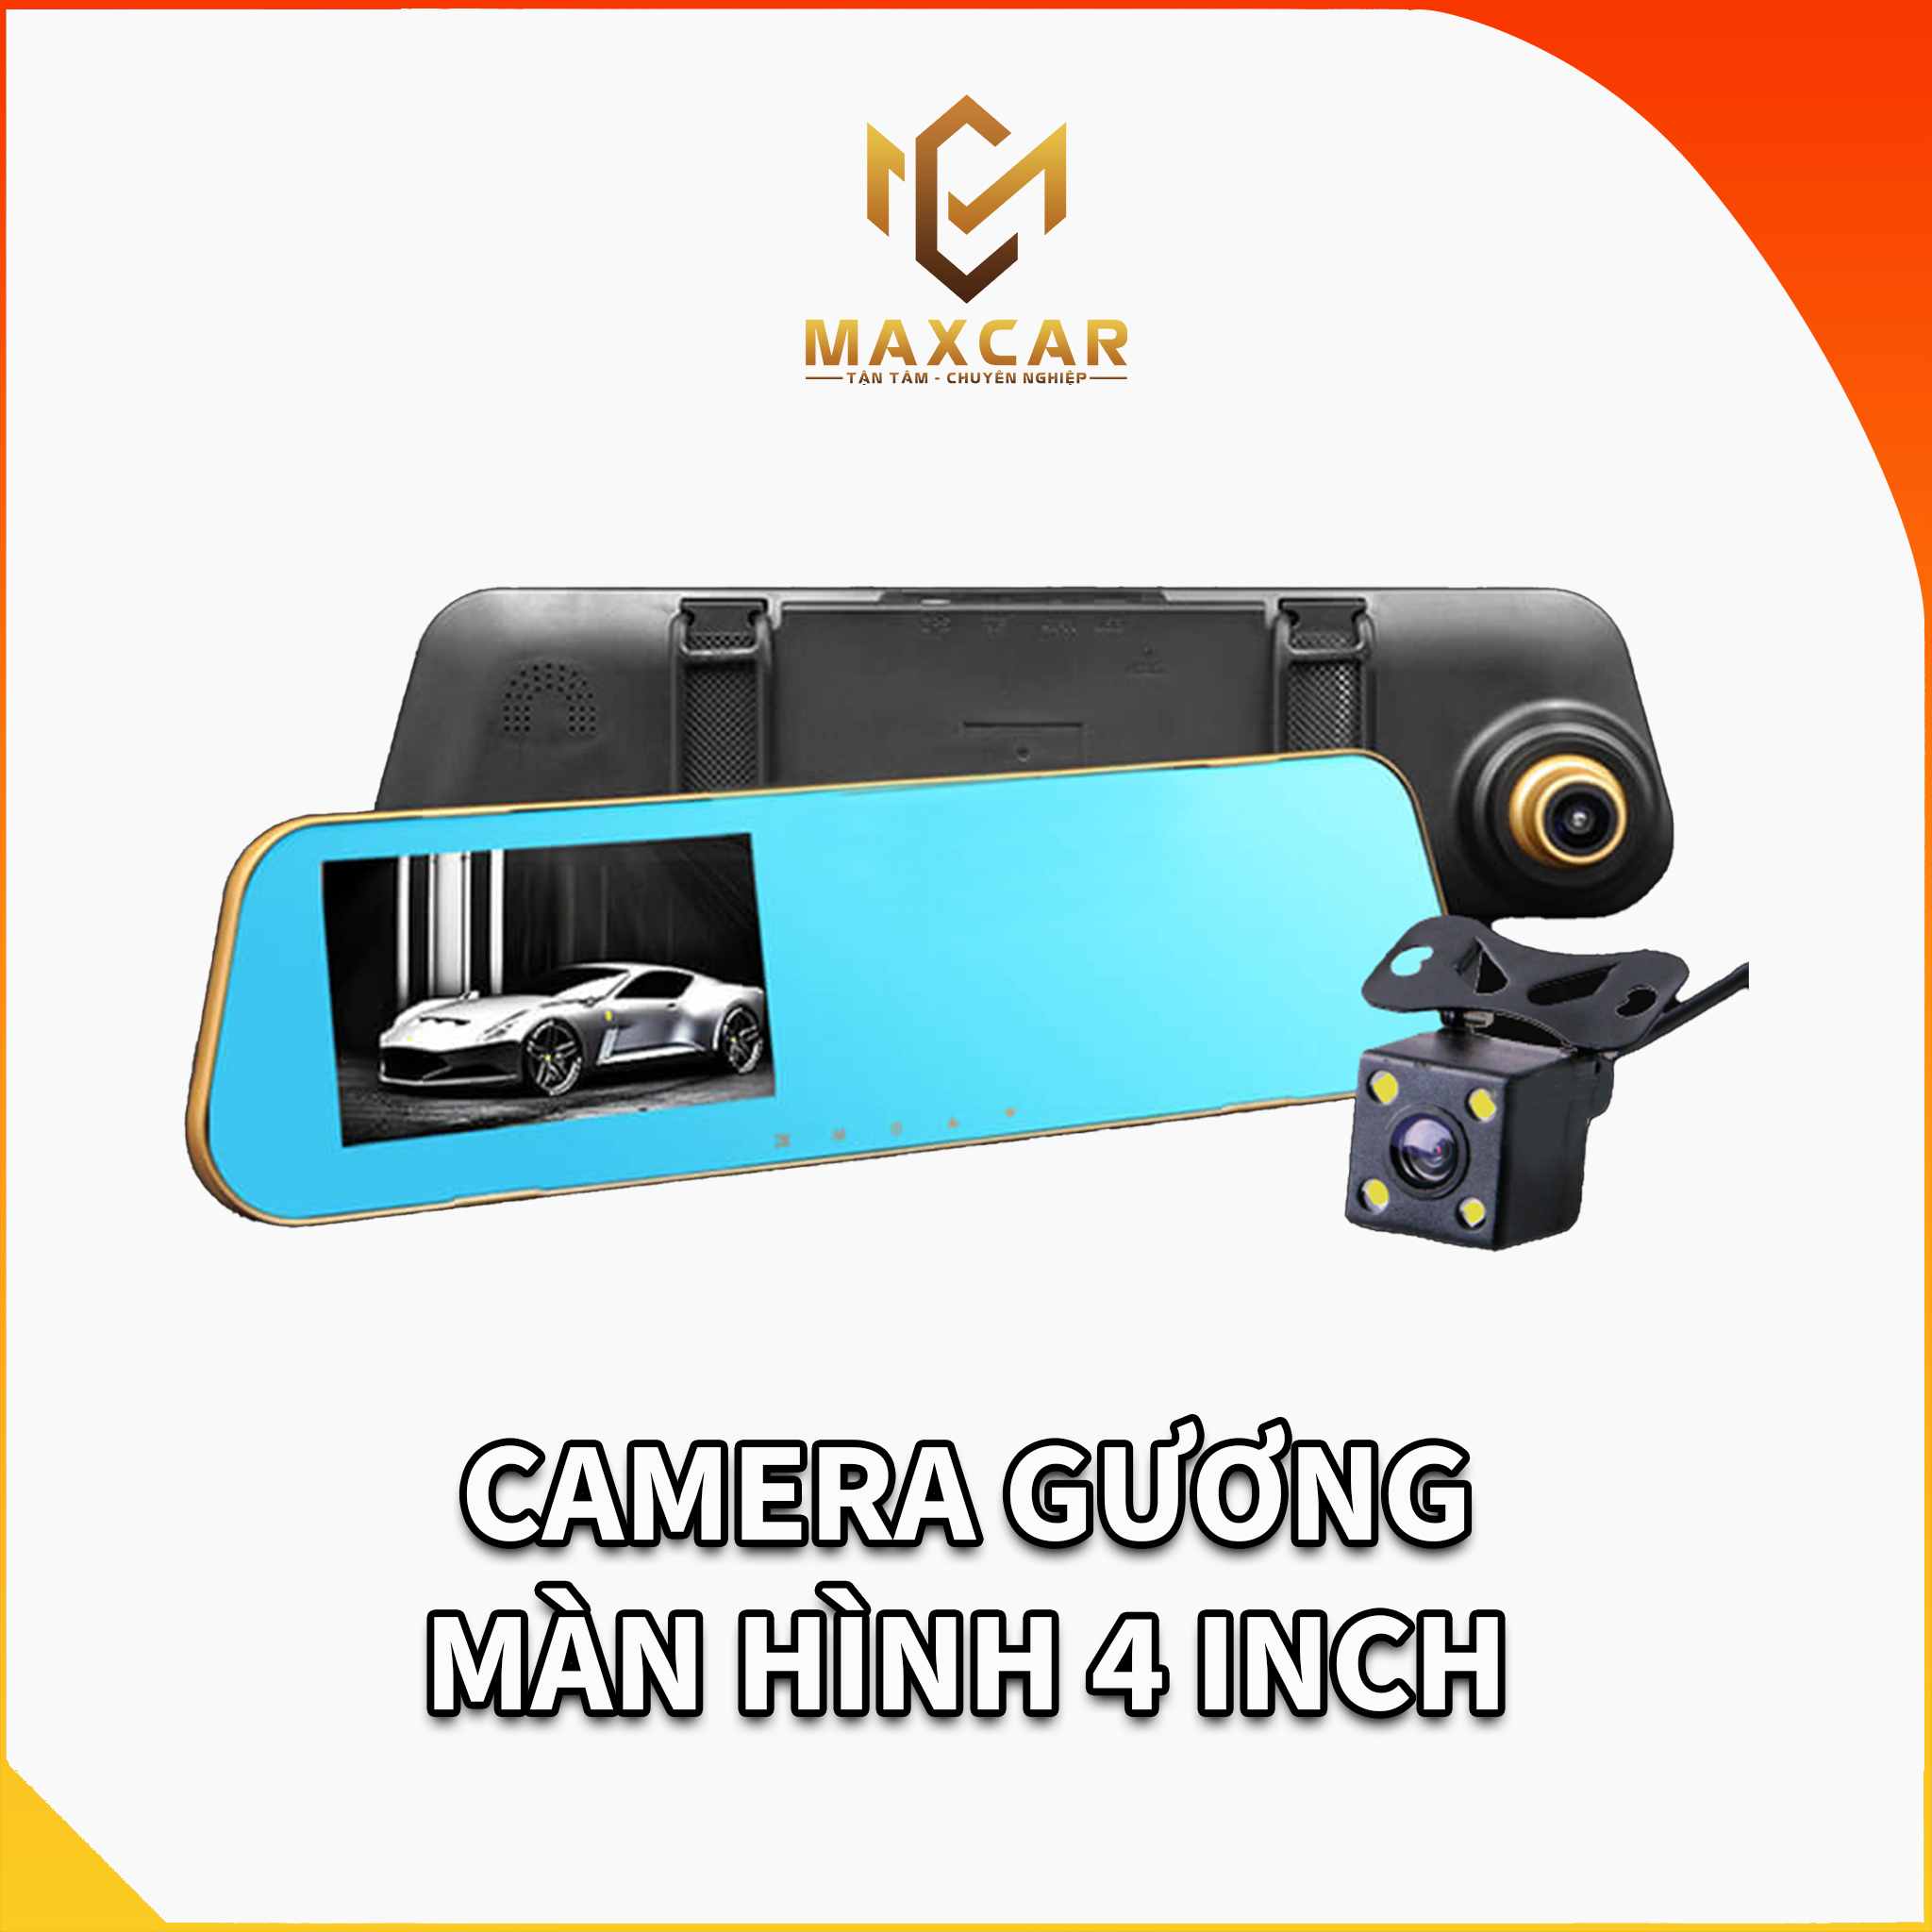 Camera gương màn hình 4 inch - An toàn tiện lợi